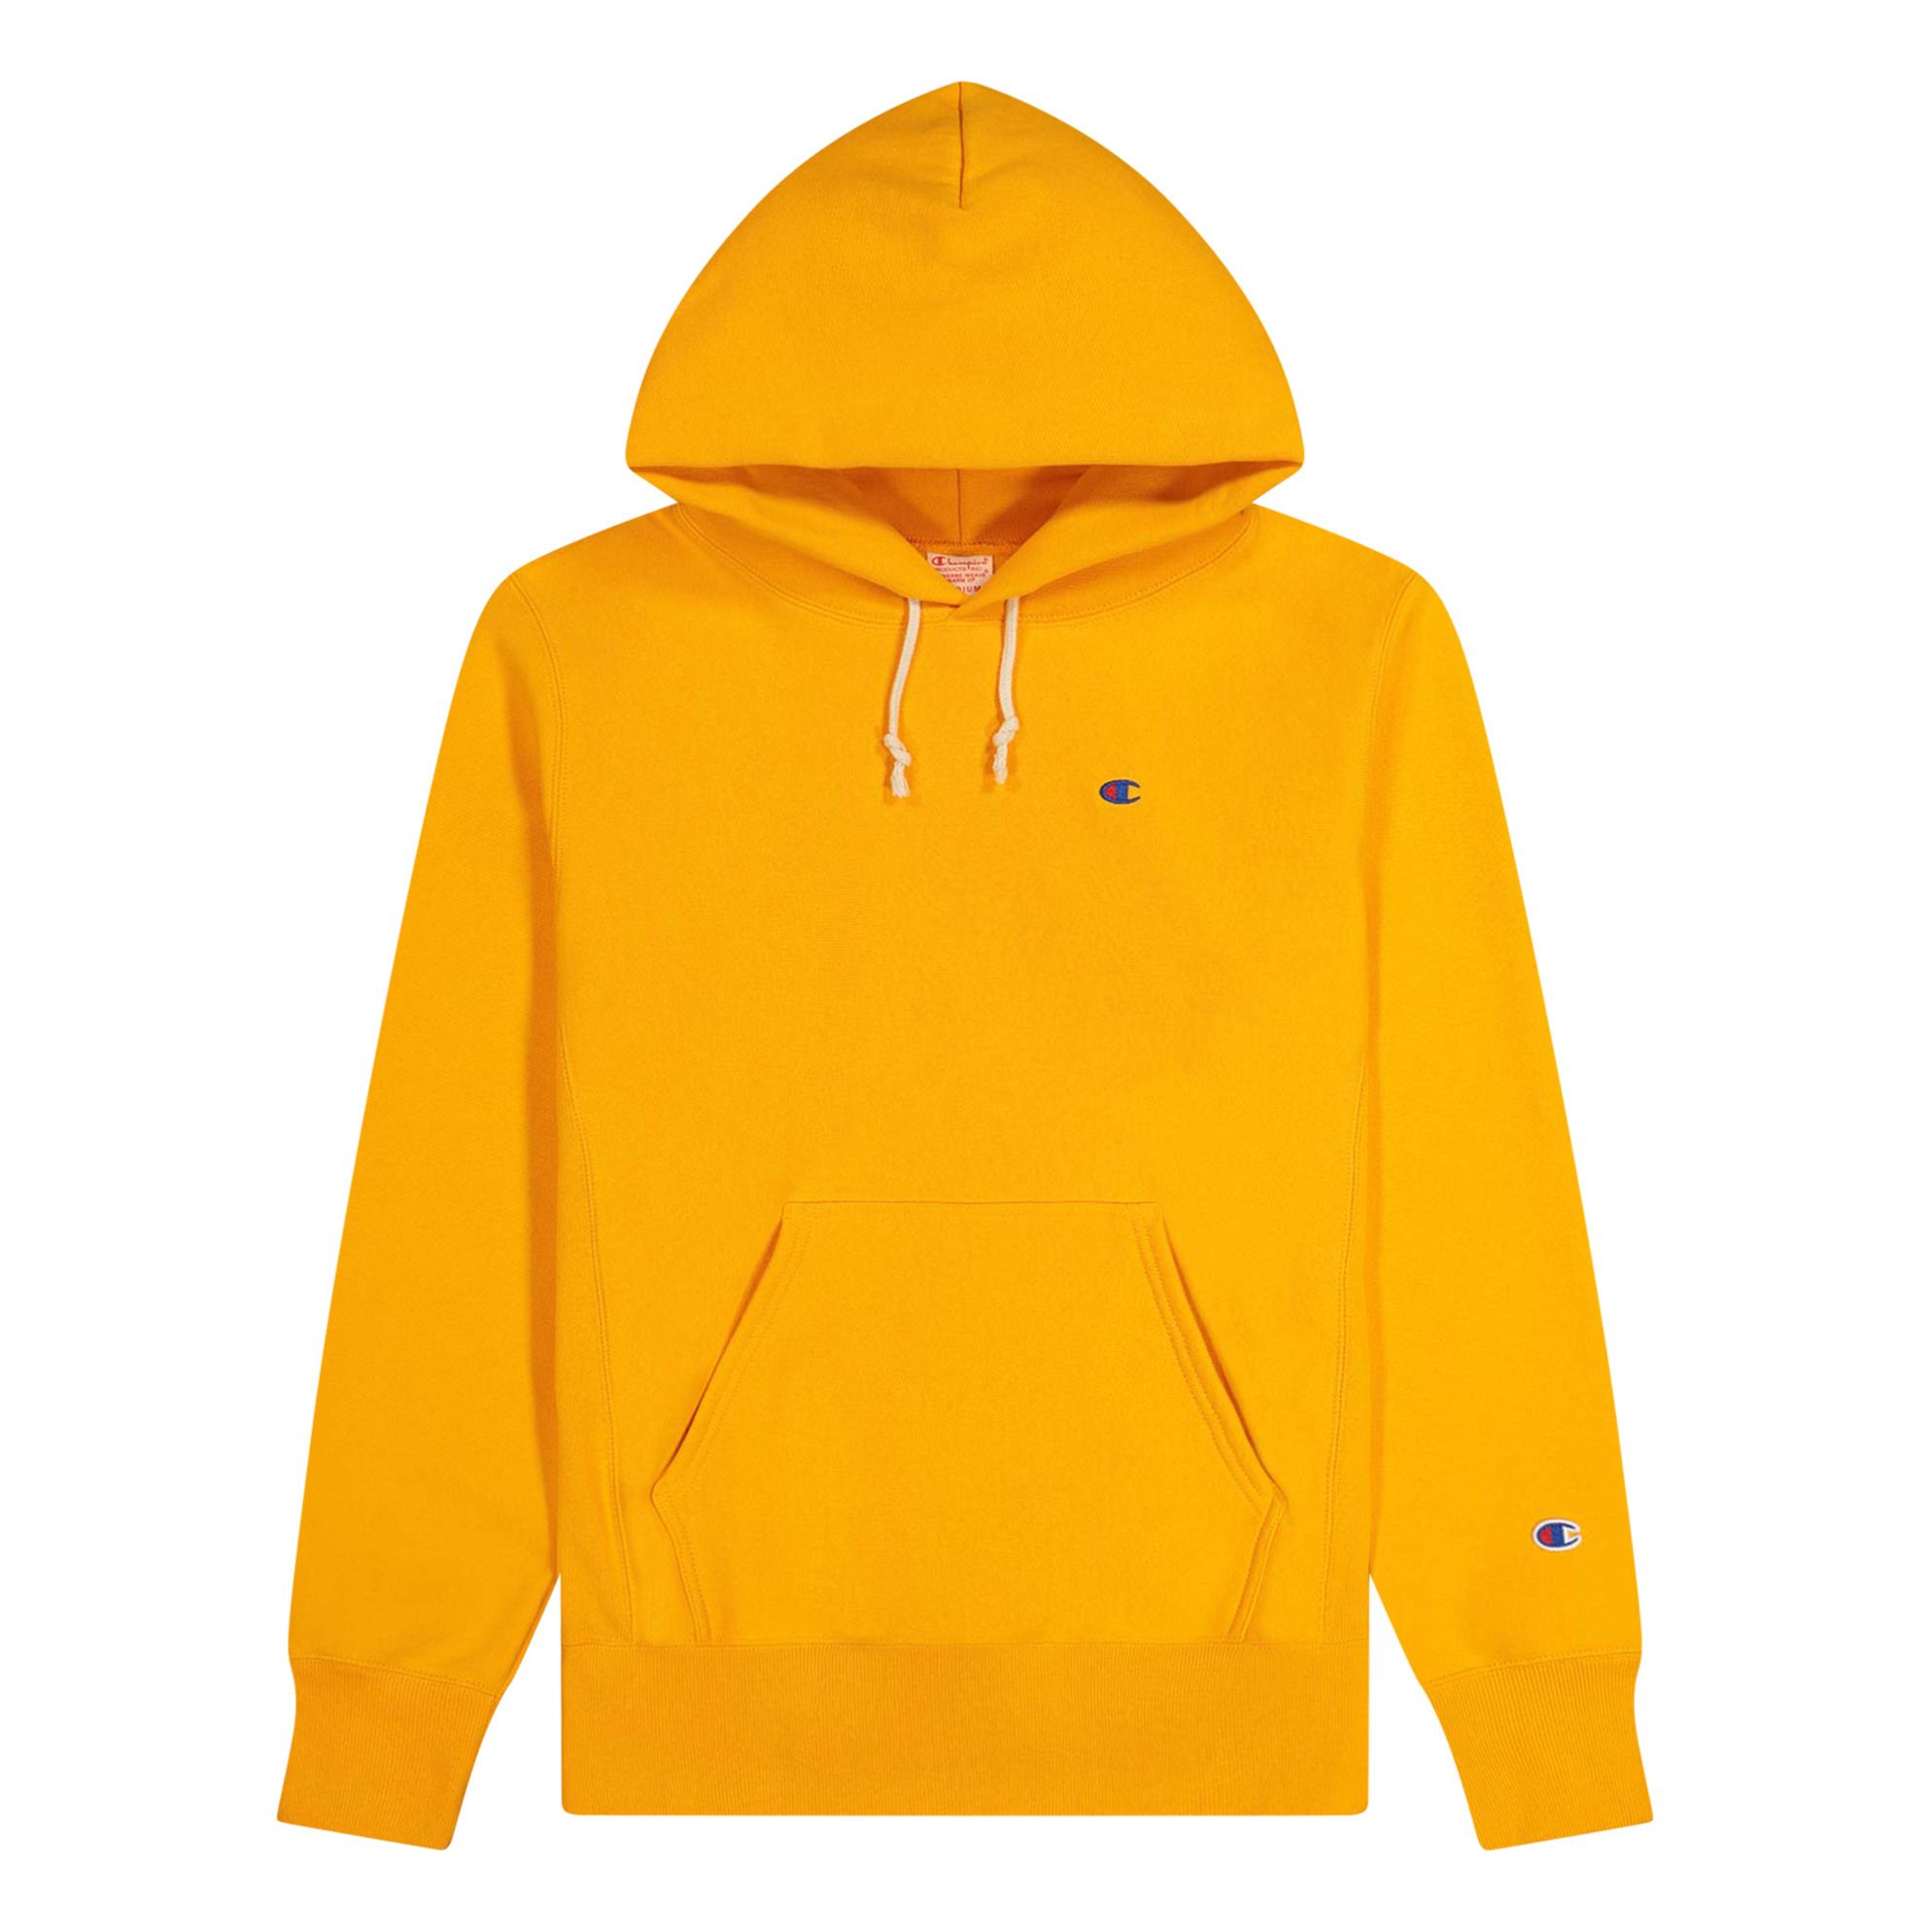 hoodie champion jaune